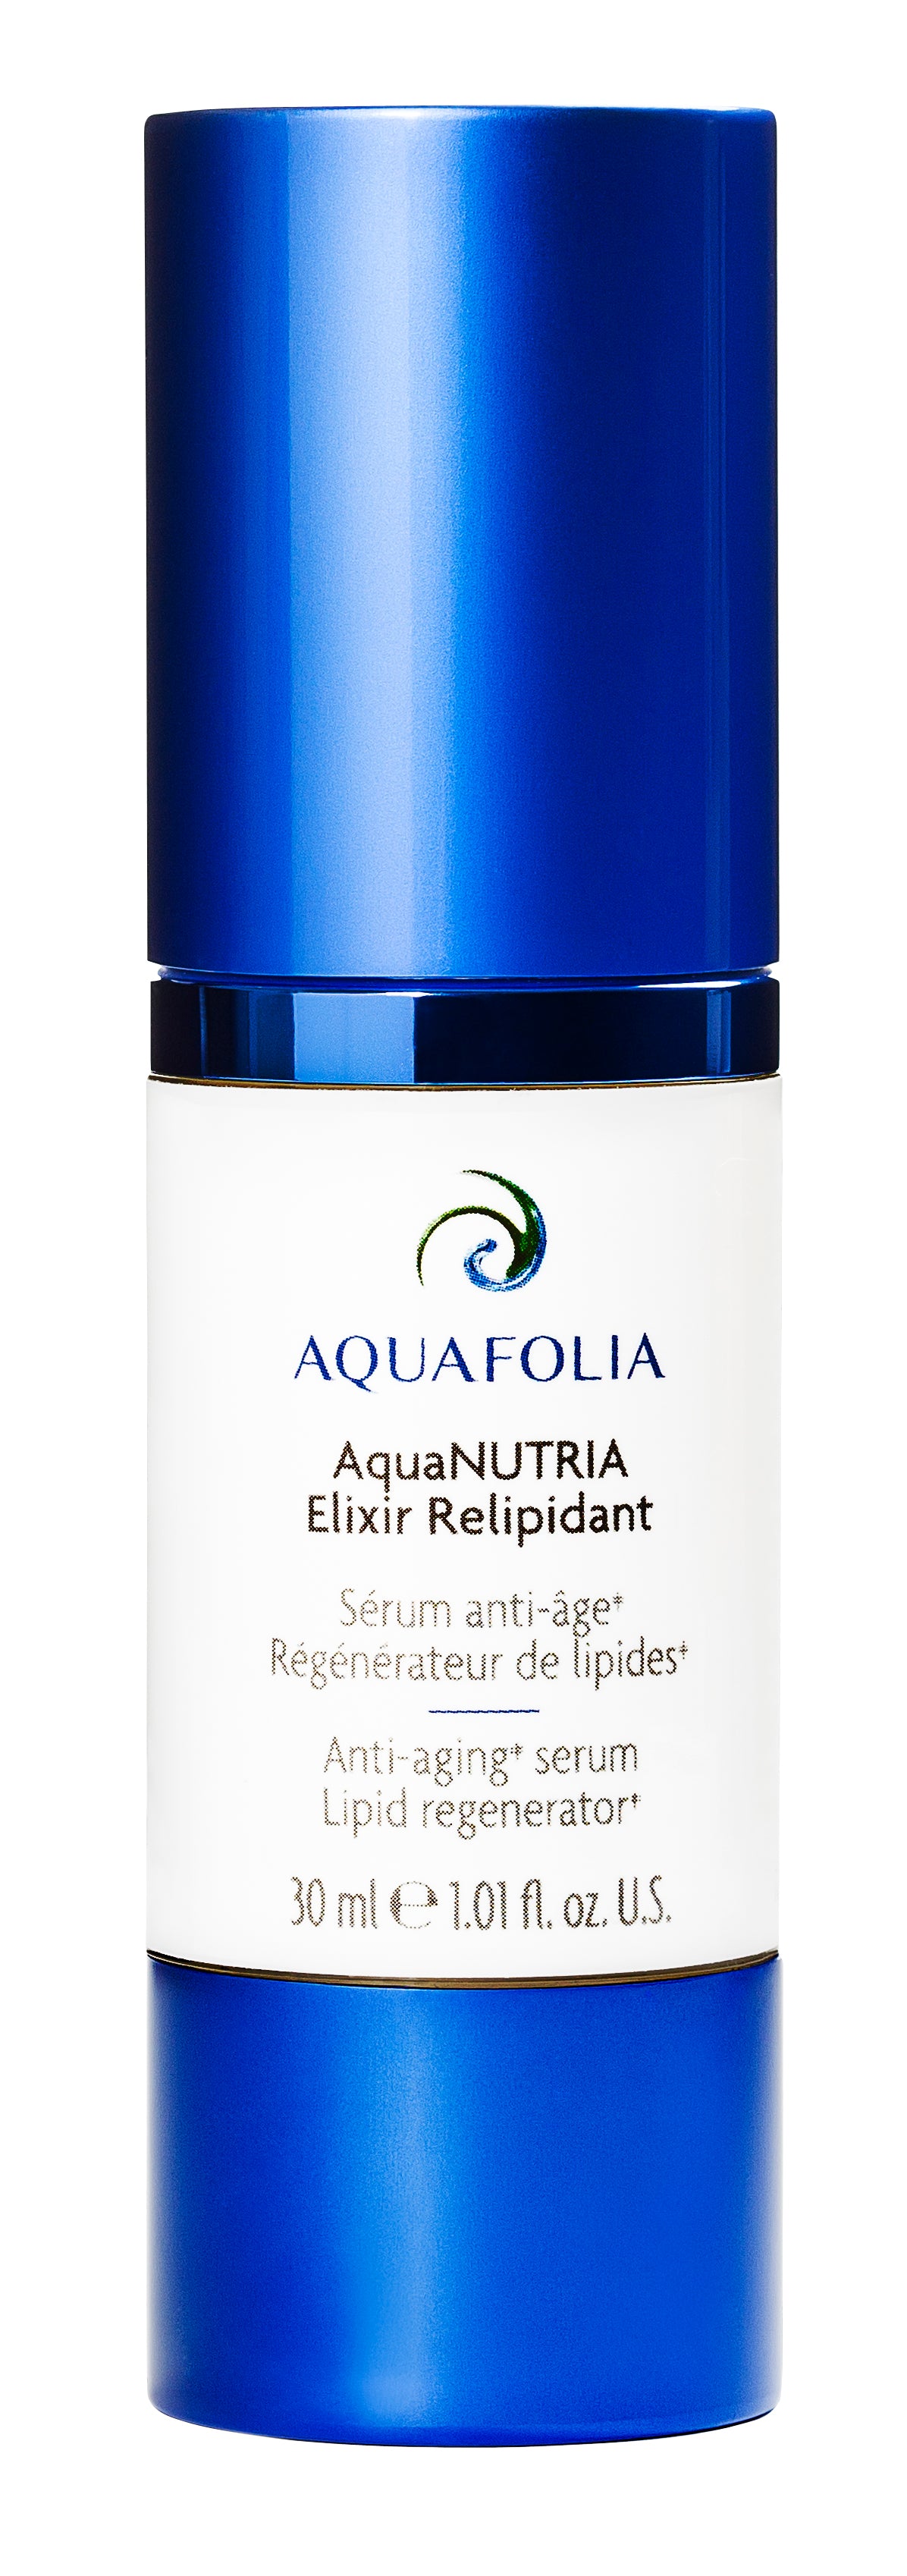 AquaNUTRIA Elixir Relipidant